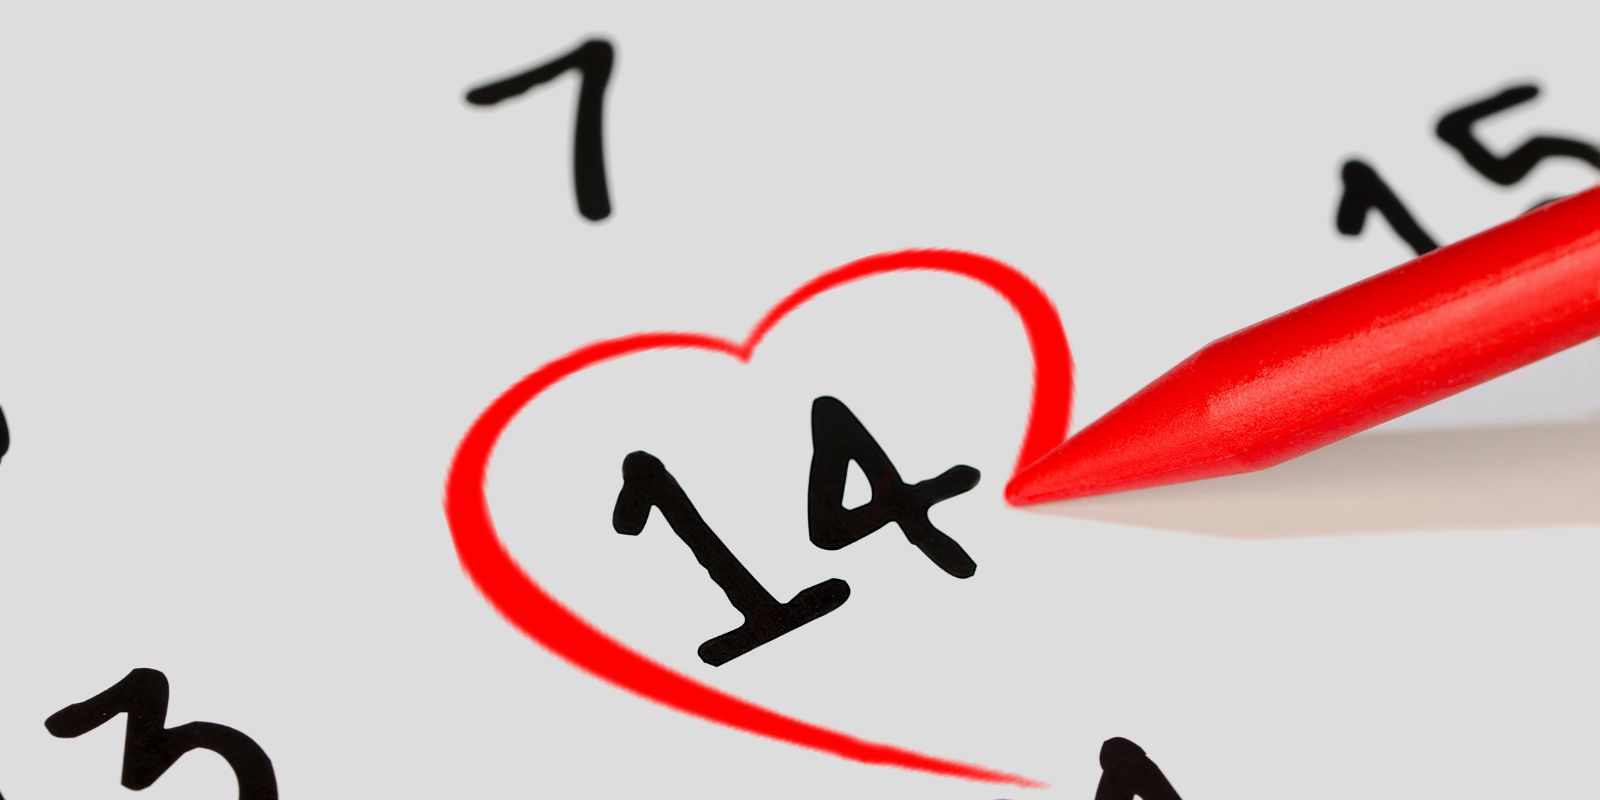 14 февраля – подарок на День влюбленных, чтобы укрепить или вернуть любовь